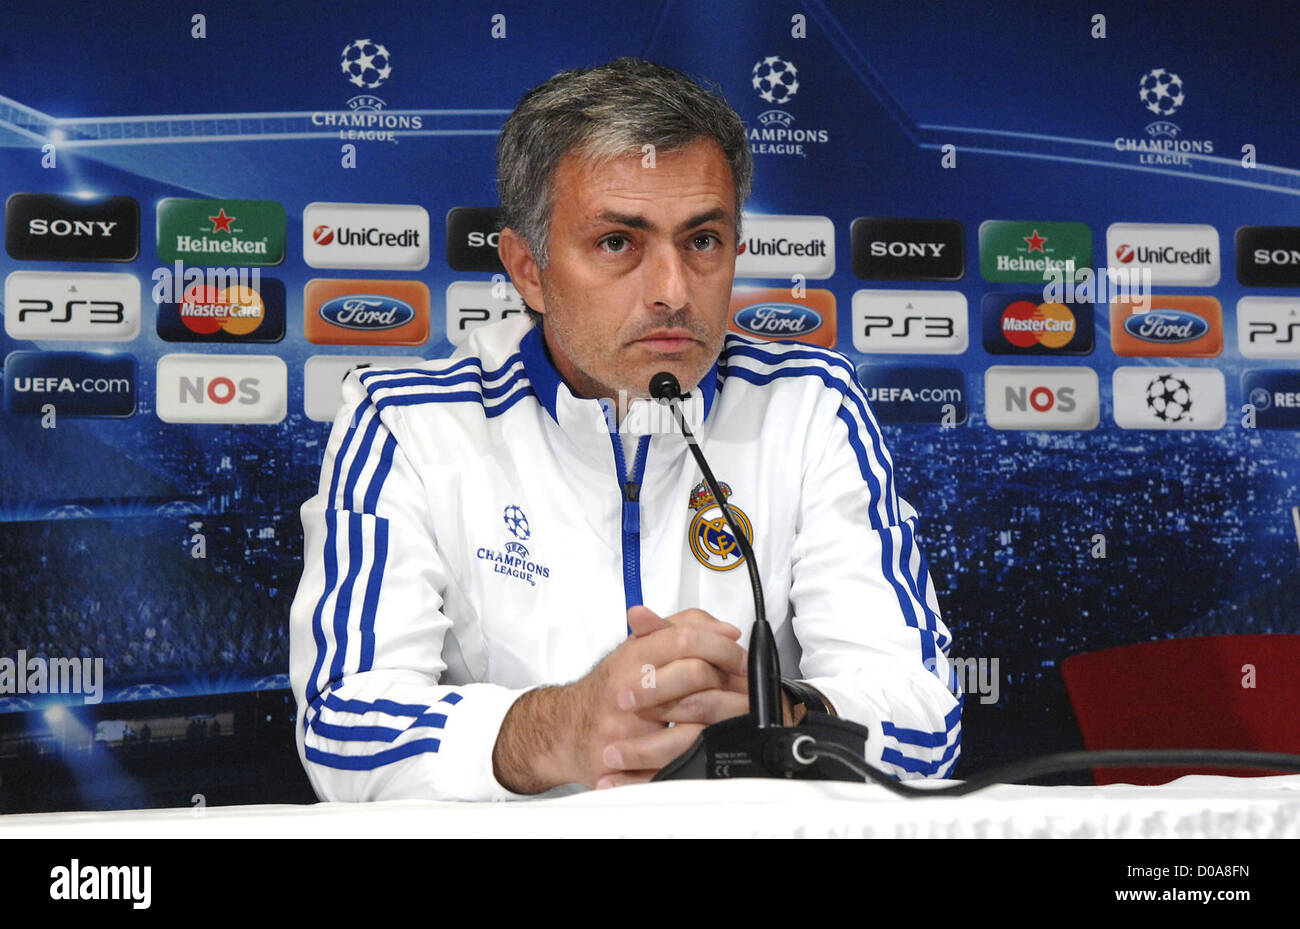 Jose Mourinho l'entraîneur du real madrid football club lors d'une conférence de presse de la Ligue des Champions à Amsterdam avant leur match Banque D'Images